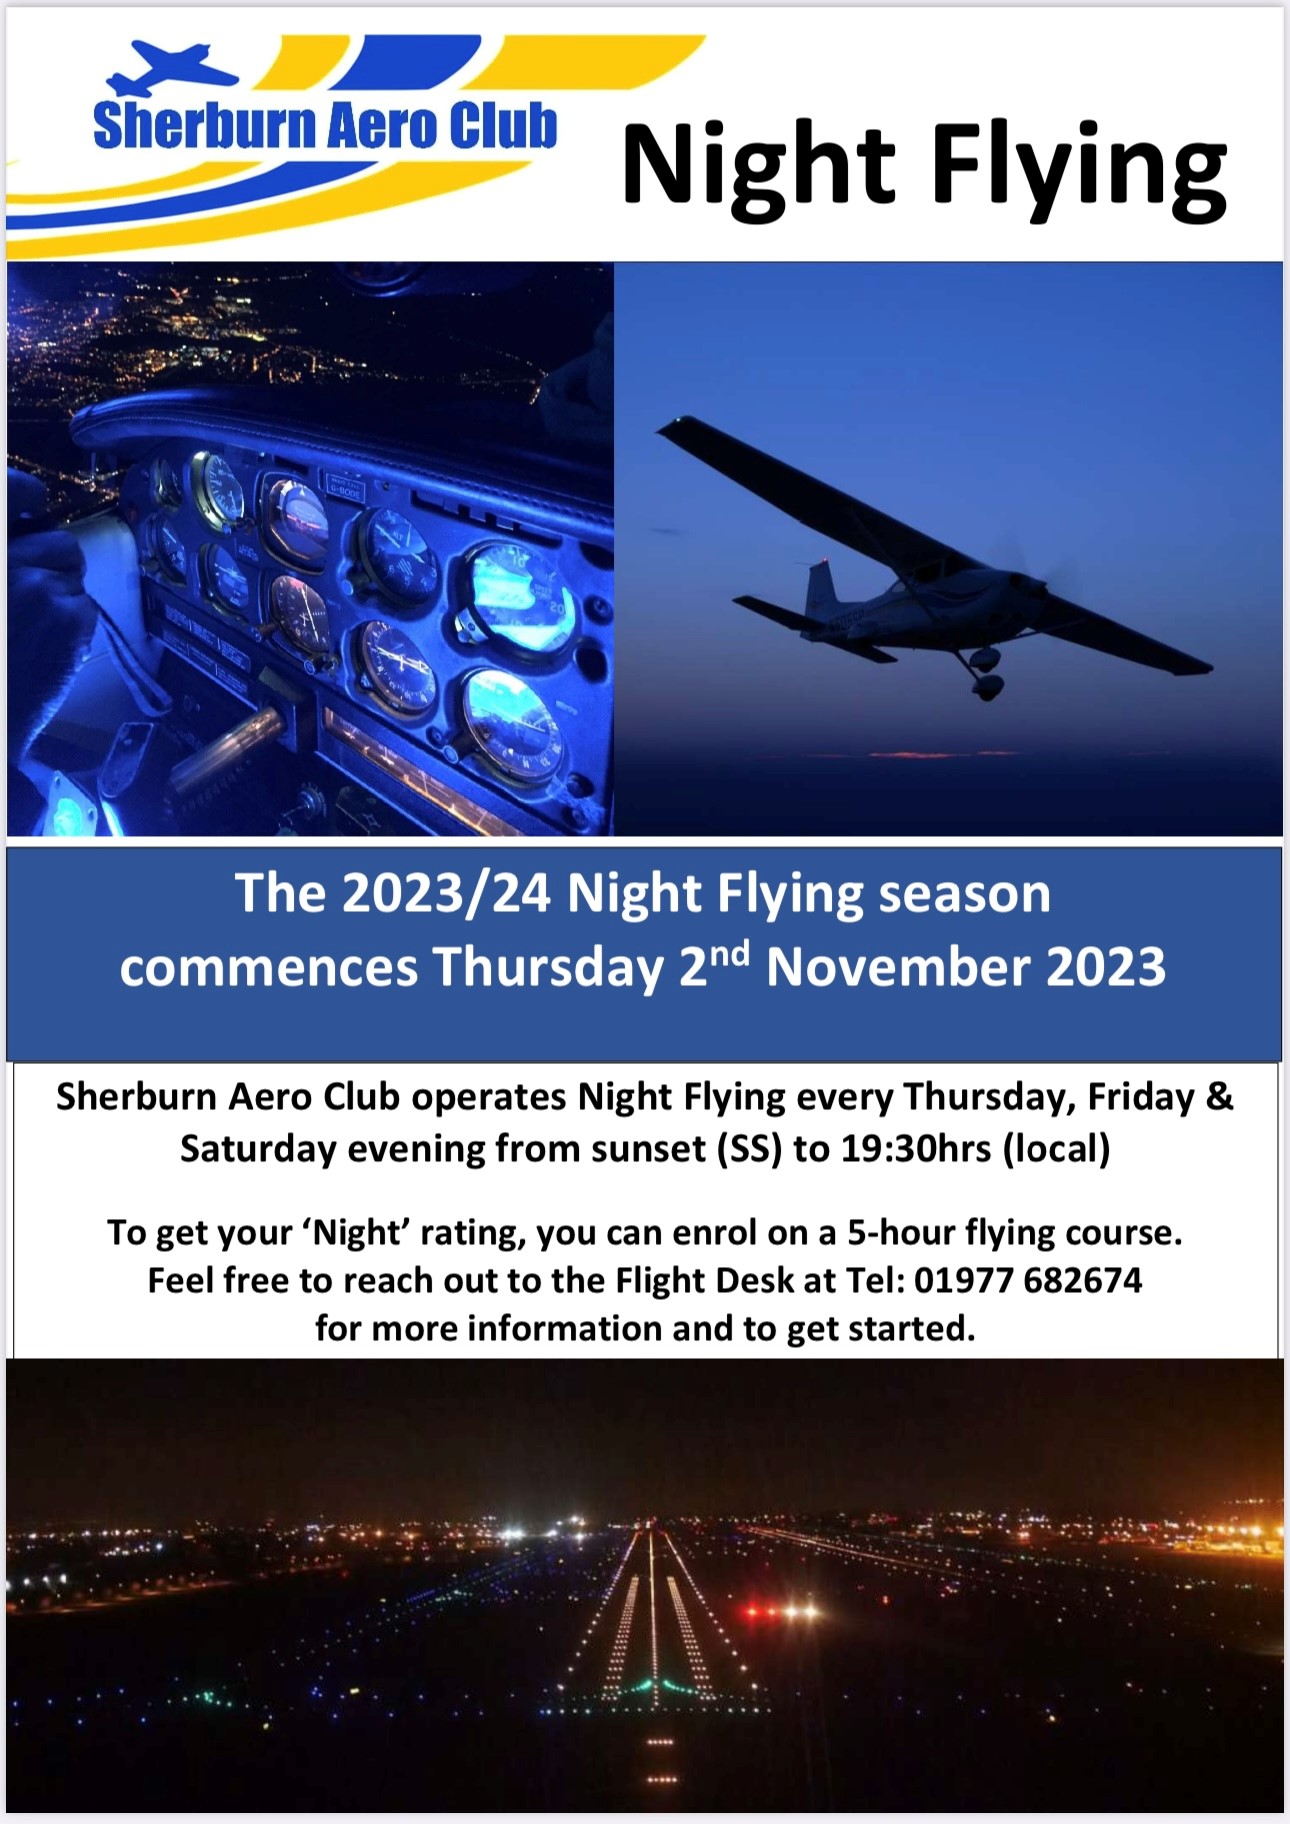 THE 2023/24 NIGHT FLYING SEASON COMMMENCES THURSDAY 2ND NOVEMBER 2023